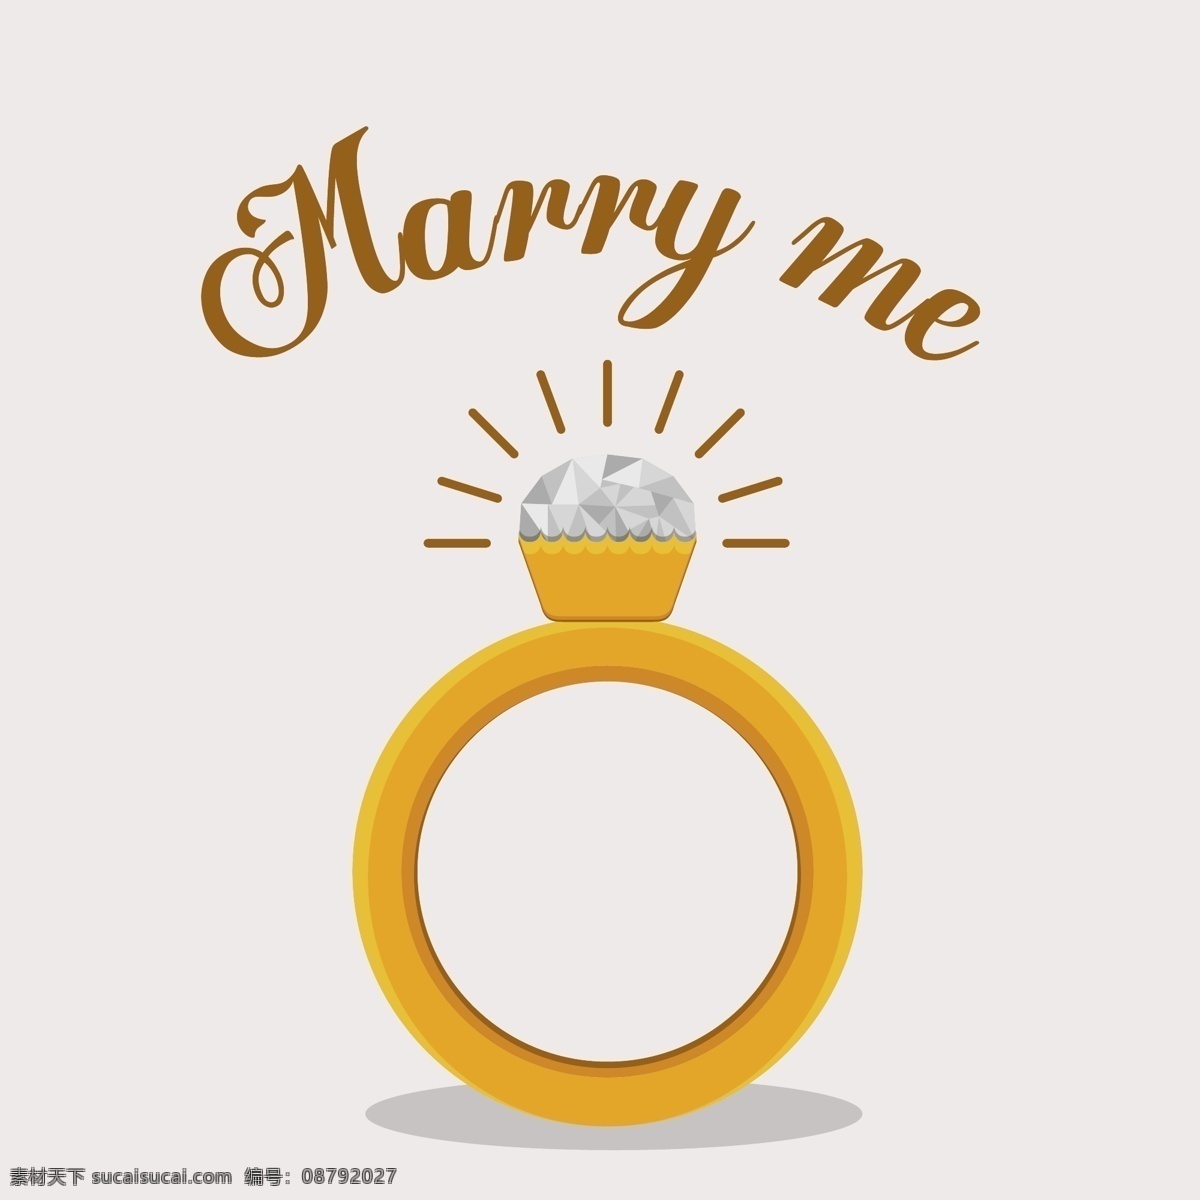 闪亮 大 钻戒 克拉钻戒 婚庆 婚姻 求婚 结婚 戒指 矢量 高清图片